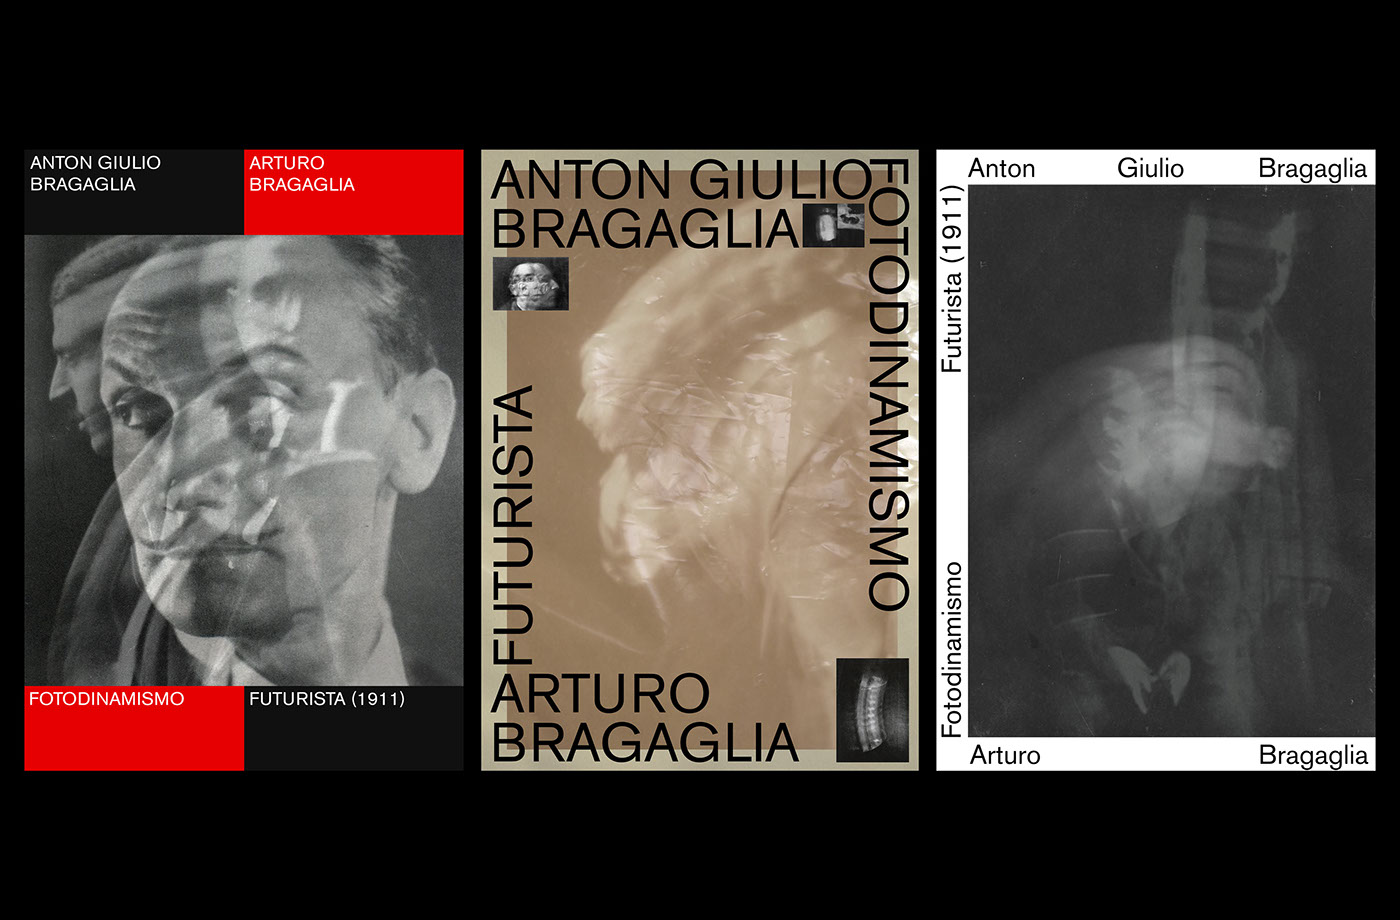 Anton Giulio Bragaglia Arturo Bragaglia Fotodinamismo futurista futurismo thais Film   Cinema italian Cines Roma book design